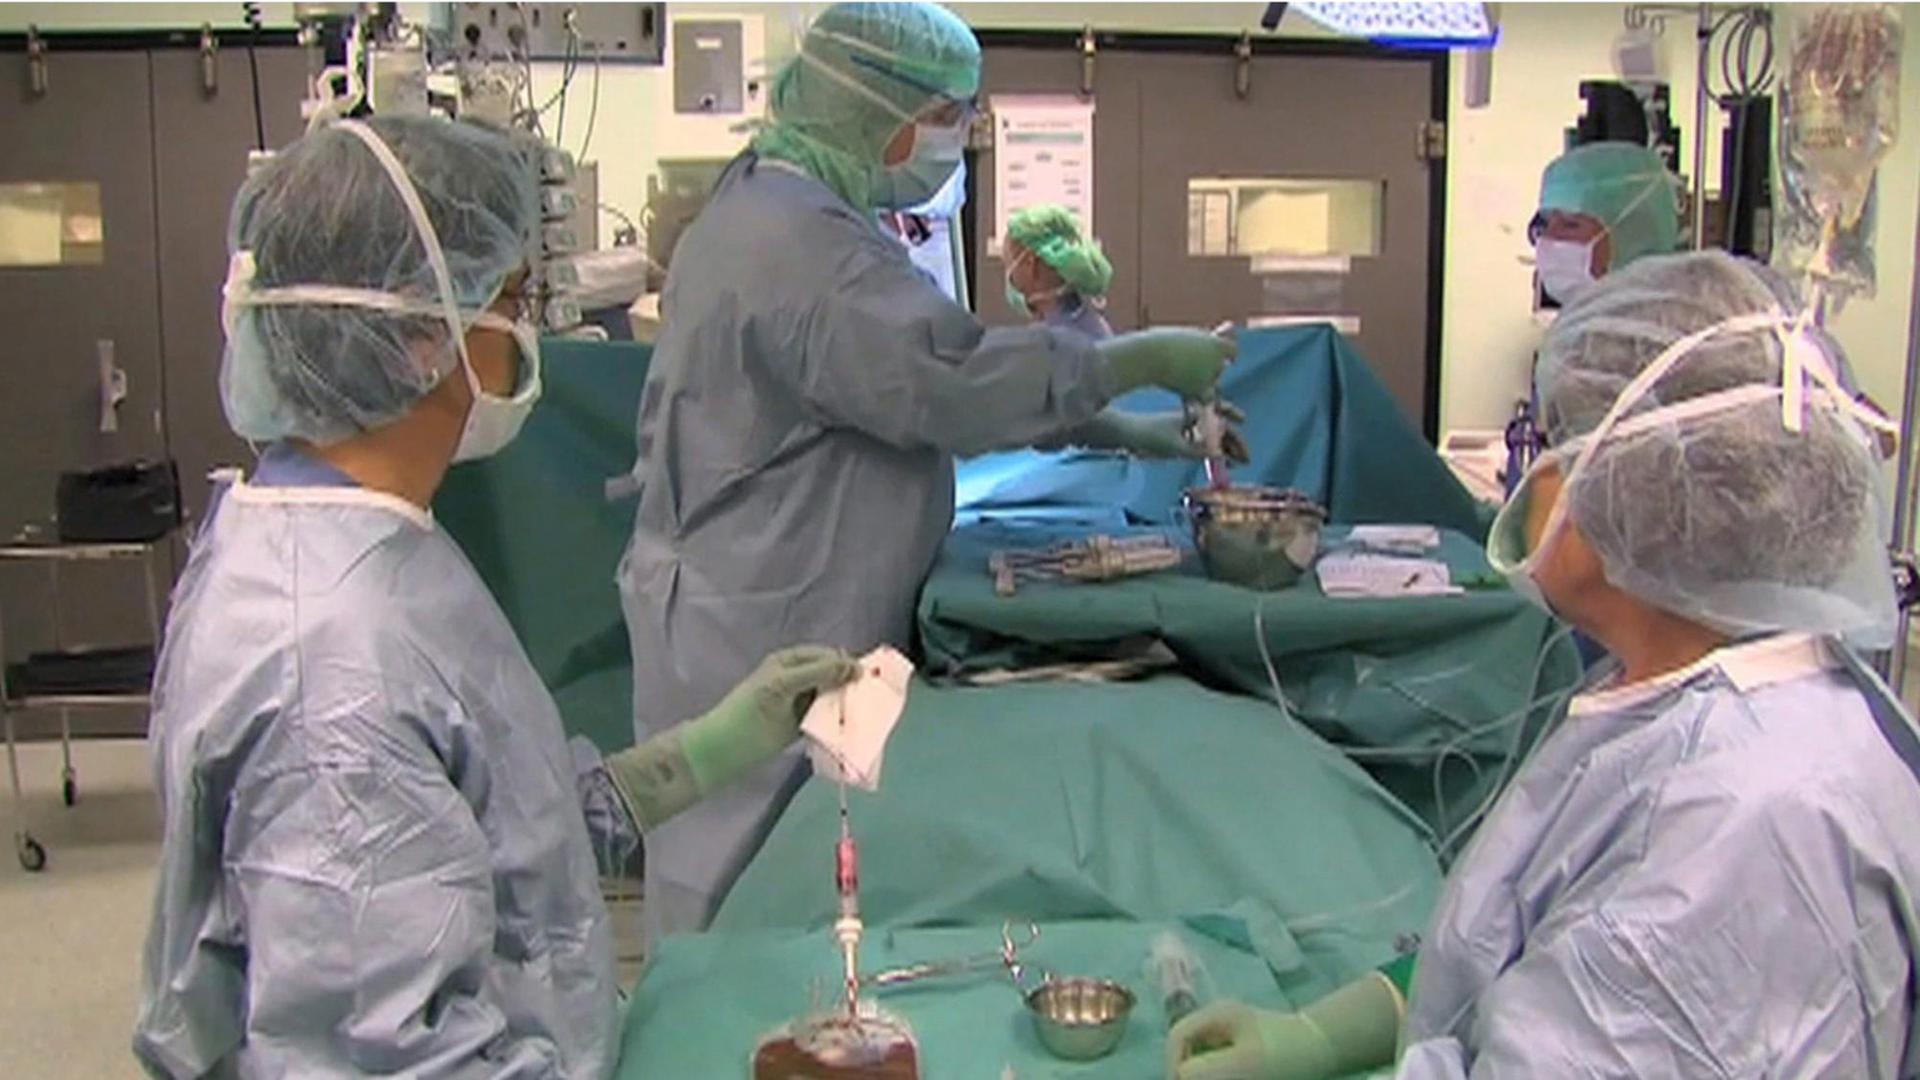 Juli 2011: Paolo Macchiarini und sein Team transplantieren einem Patienten im Krankenhaus des schwedischen Karolinska-Instituts eine künstliche Luftröhre. I